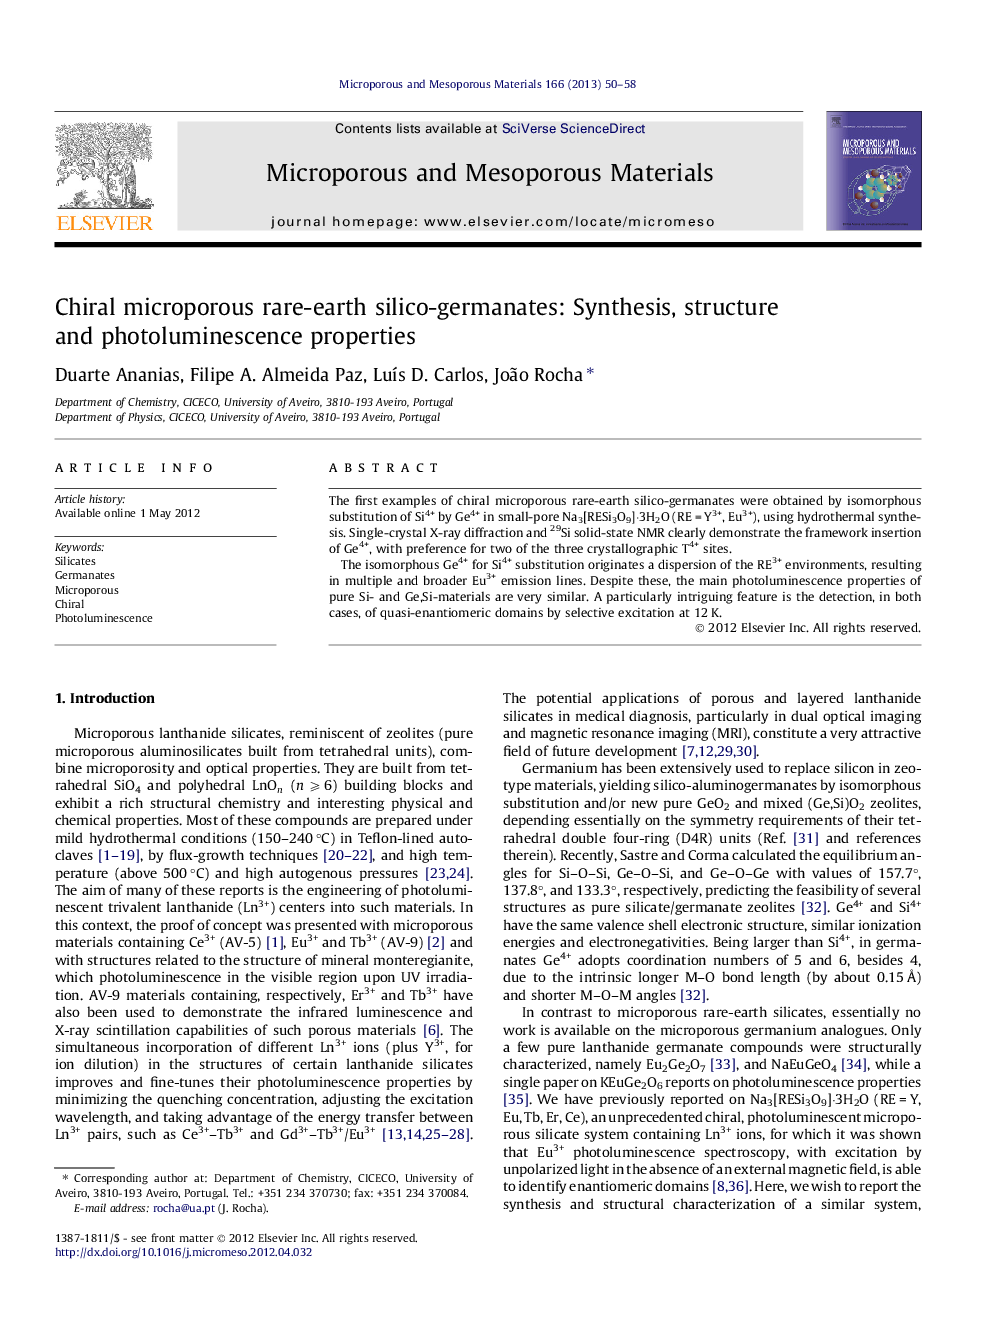 سیلیکا-ژنراتای نادر خاک کریپال: سنتز، ساختار و ویژگی های فوتولومینسانس 